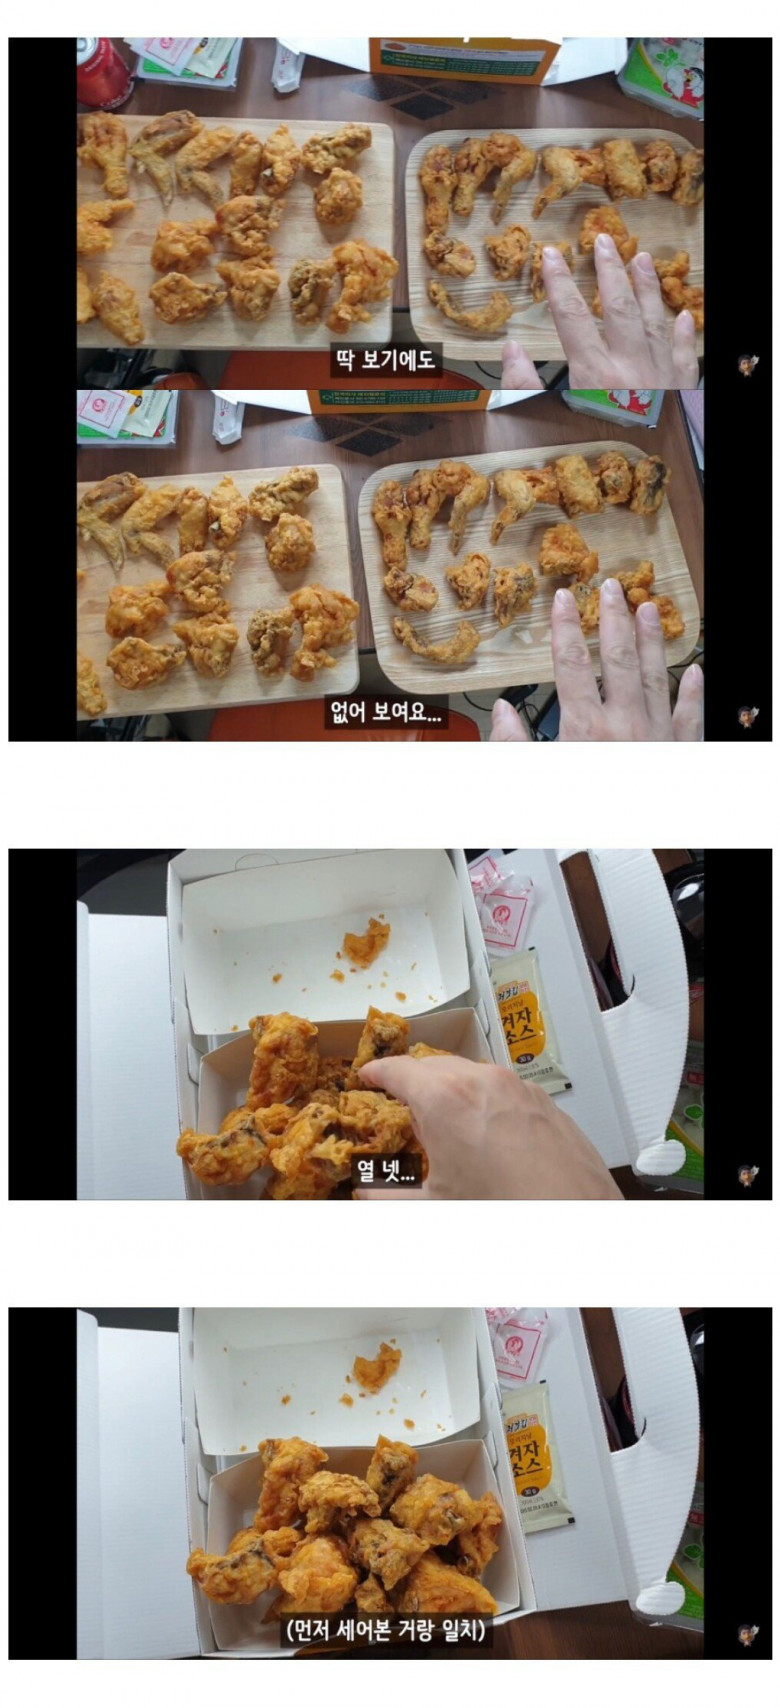 [스압] 치킨 한마리와 두마리 치킨 세트의 닭 크기 차이.jpg